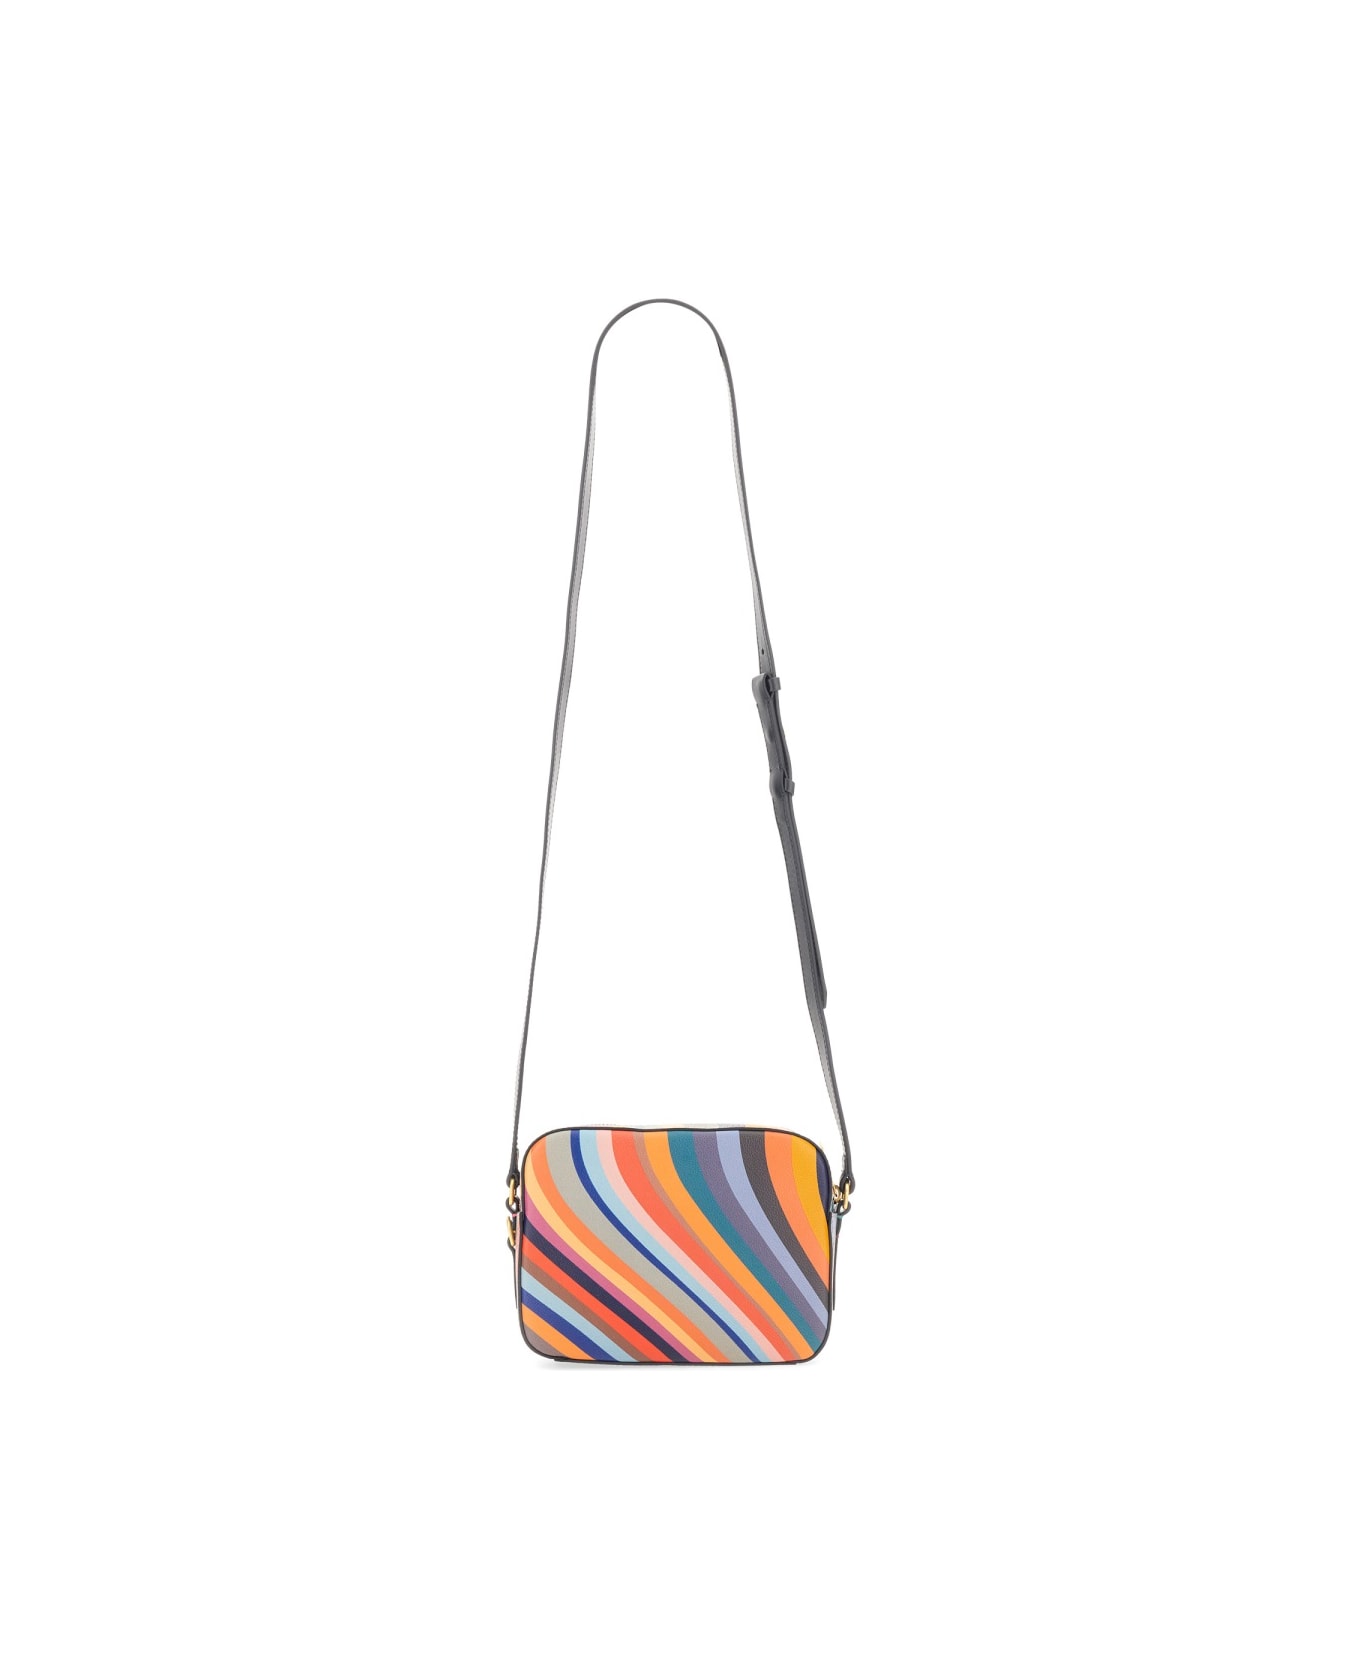 Paul Smith Shoulder Bag 'swirl' - Multicolor